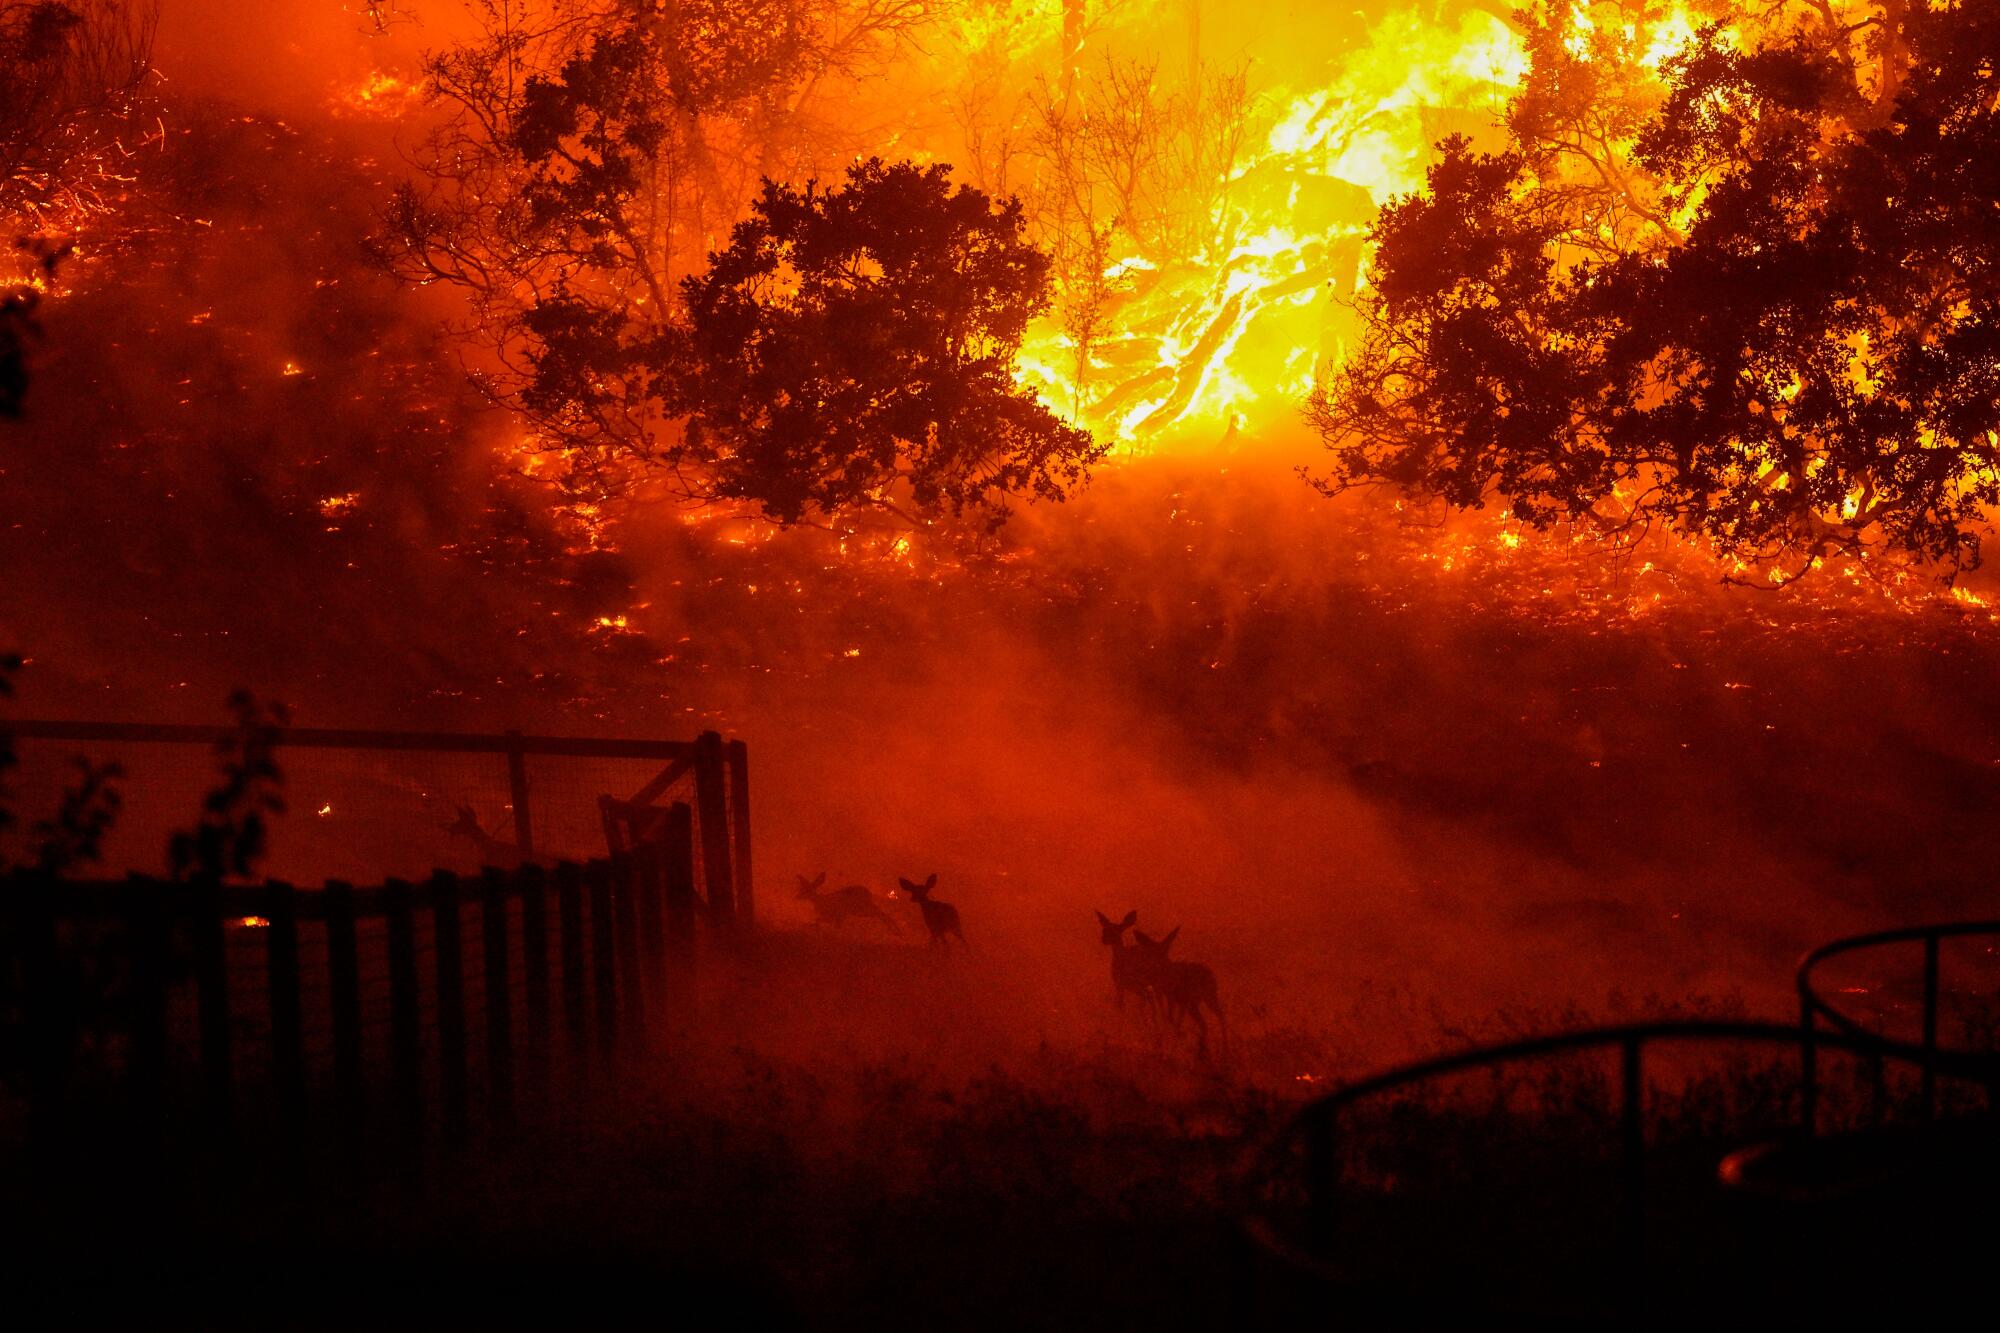 Wildlife runs amid smoke and flames.